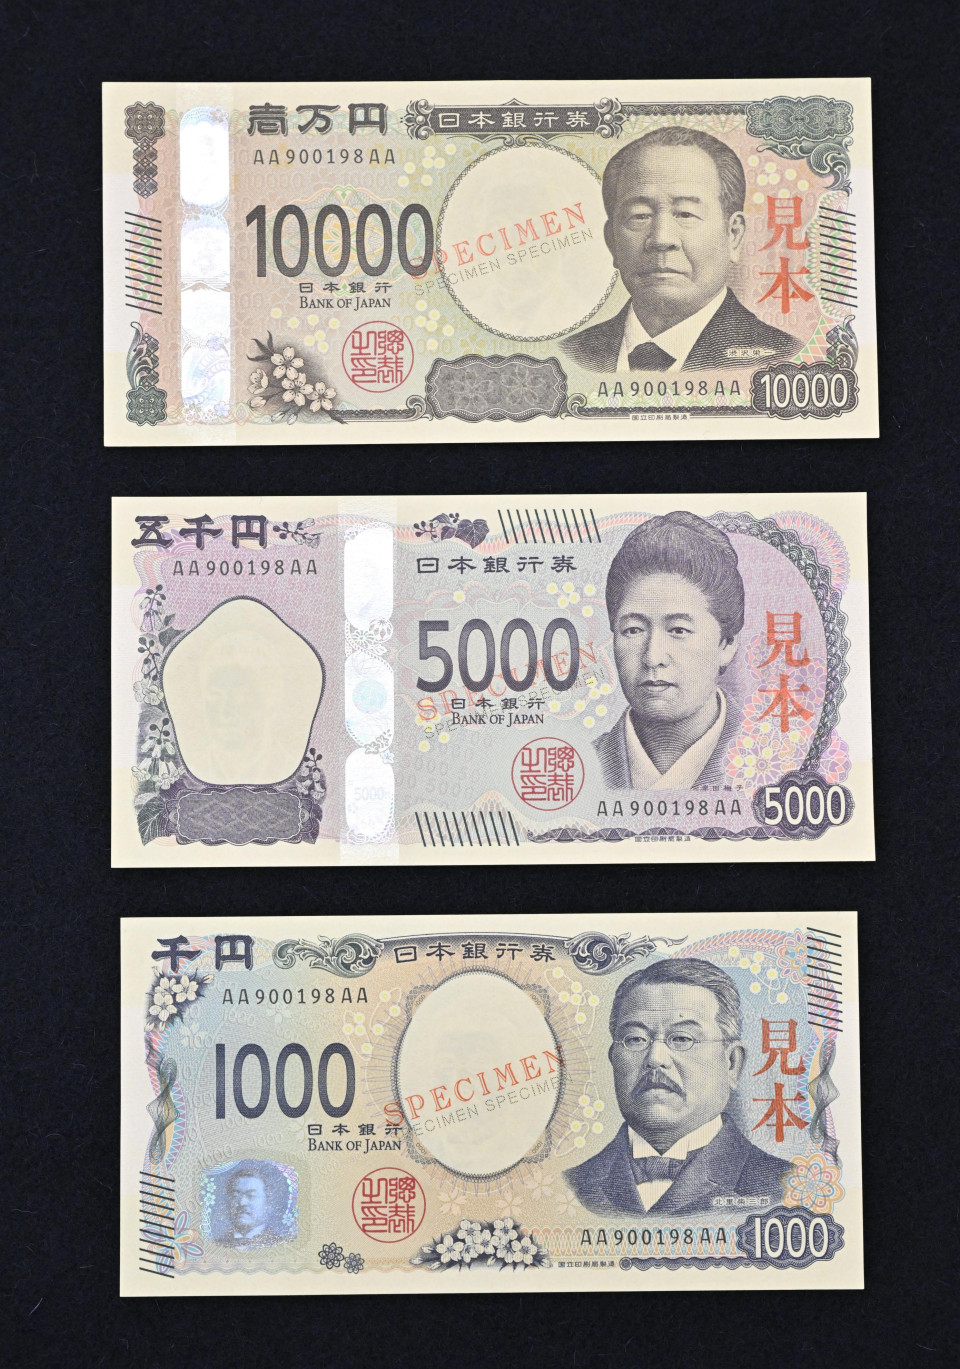 Le Japon lancera de nouveaux billets de banque le 3 juillet, premier changement de design en 20 ans